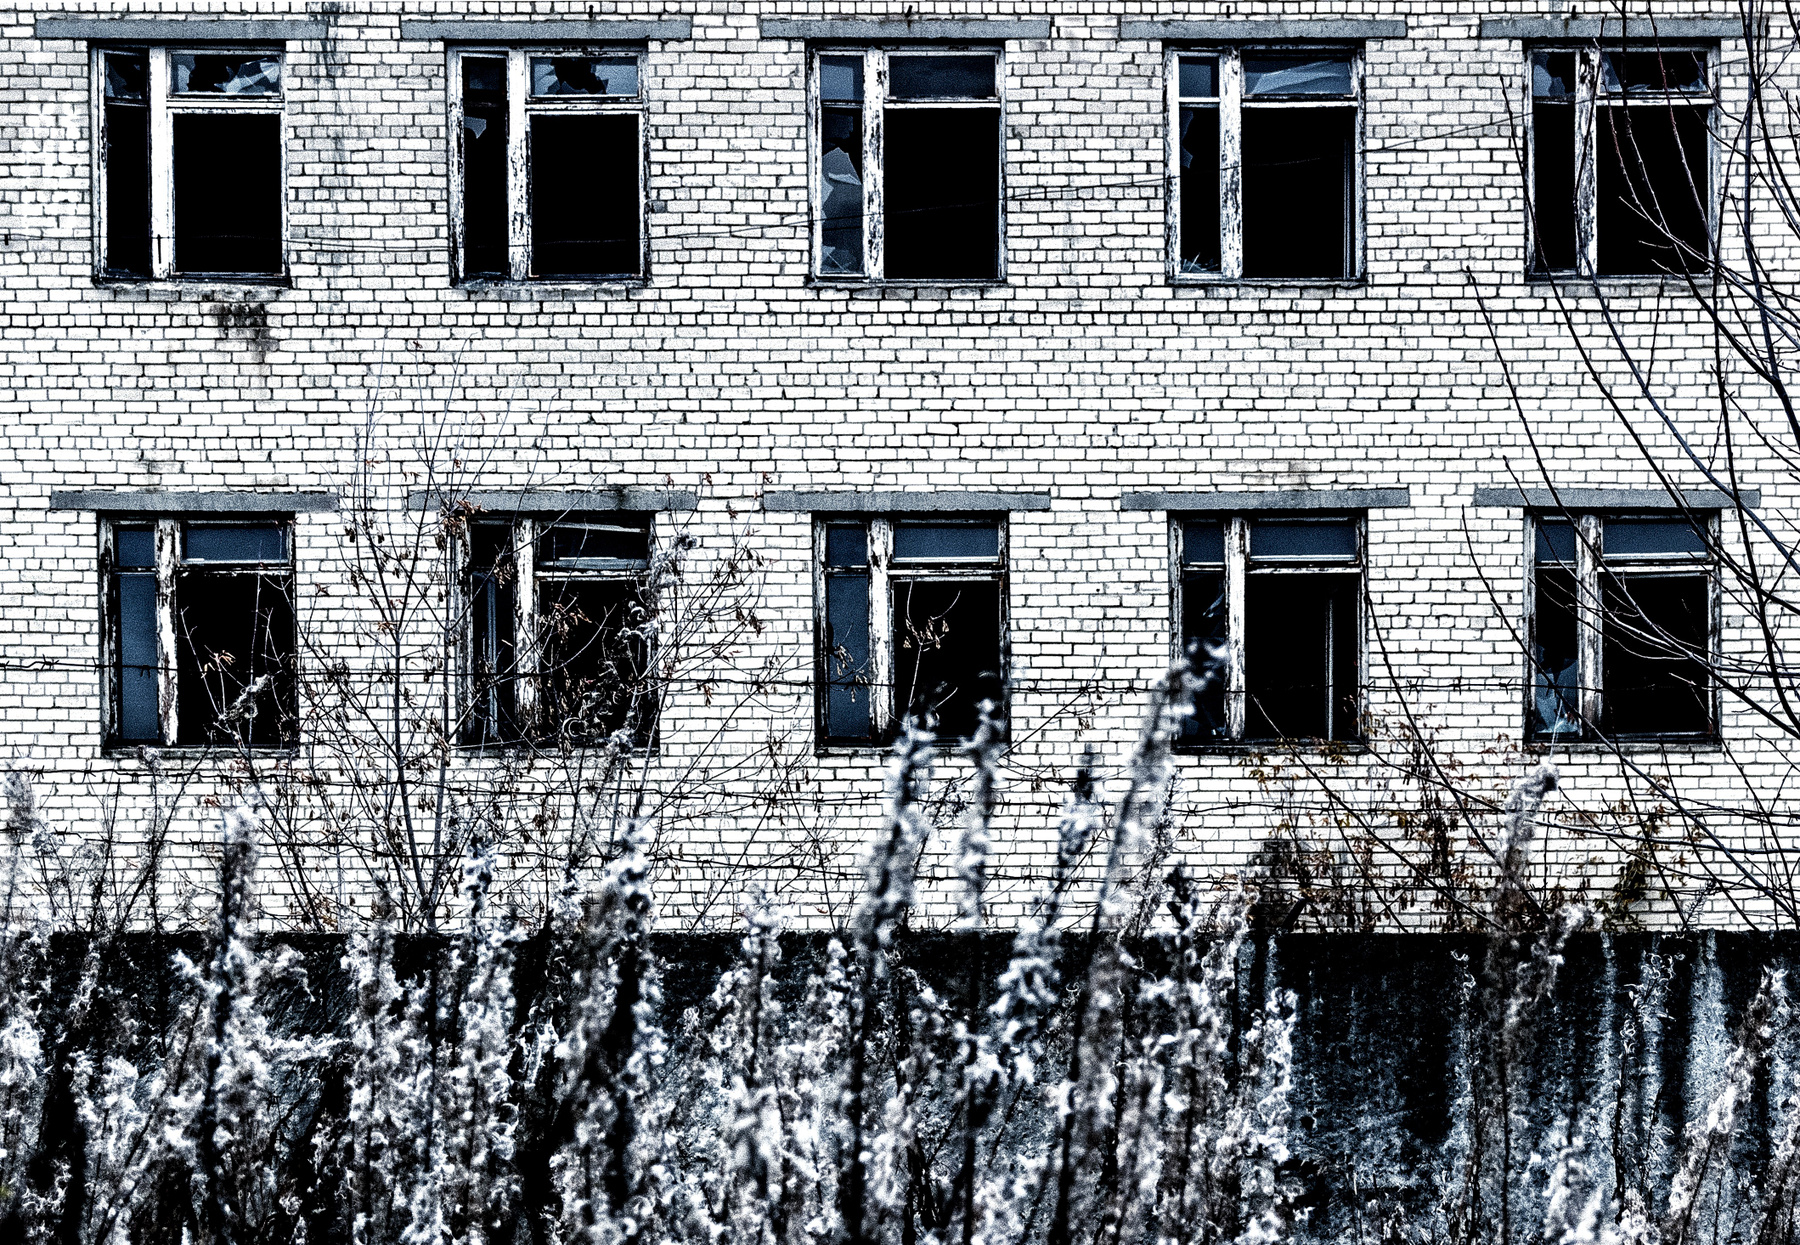 окна возможностей россия урал город архитектура стена окна обработка hdr